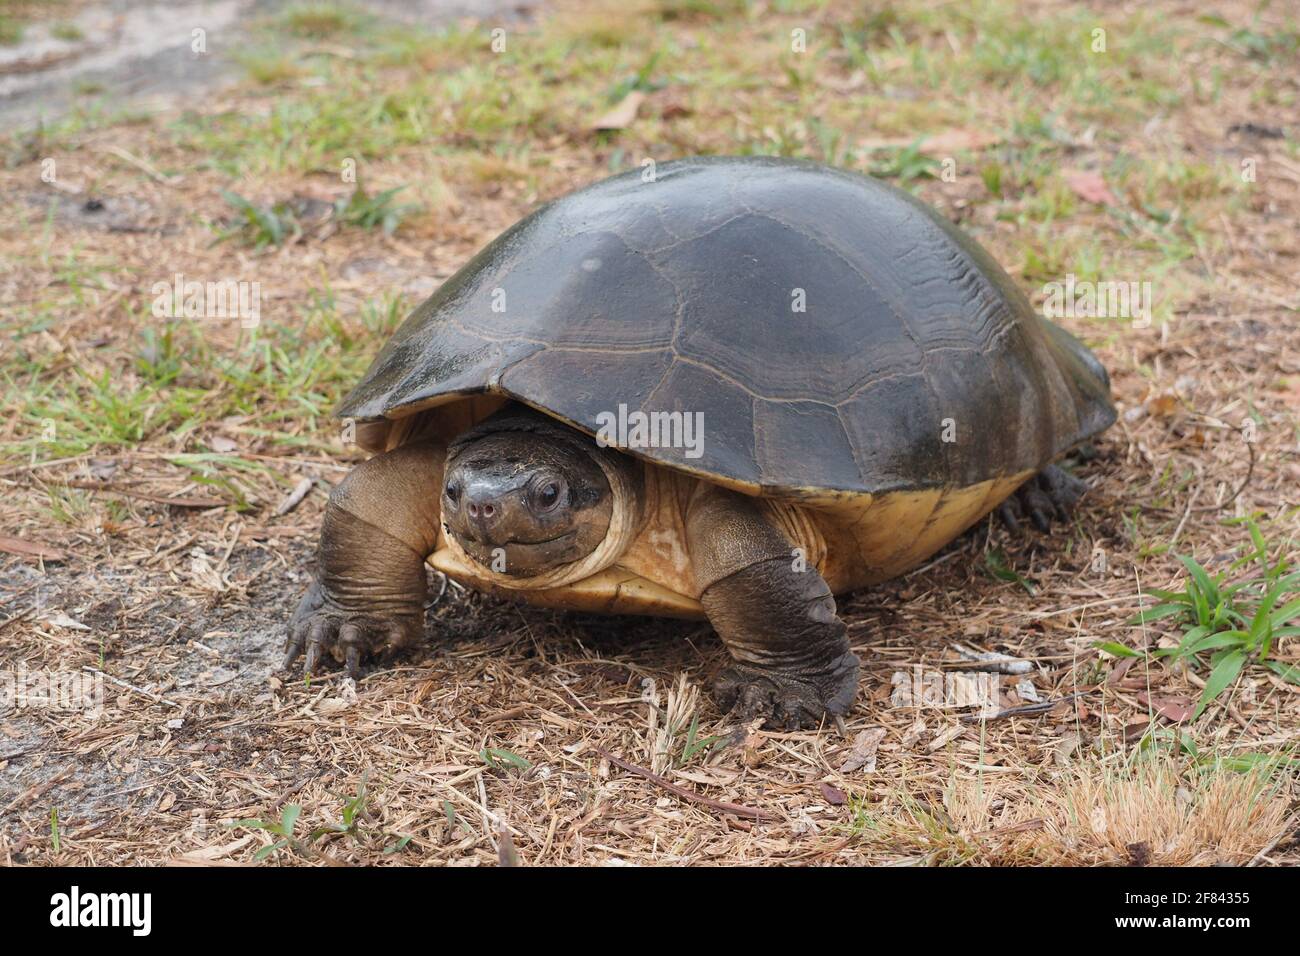 La tortue géante malaisienne ou la tortue de la rivière Bornean (Orlitia borneensis) Banque D'Images